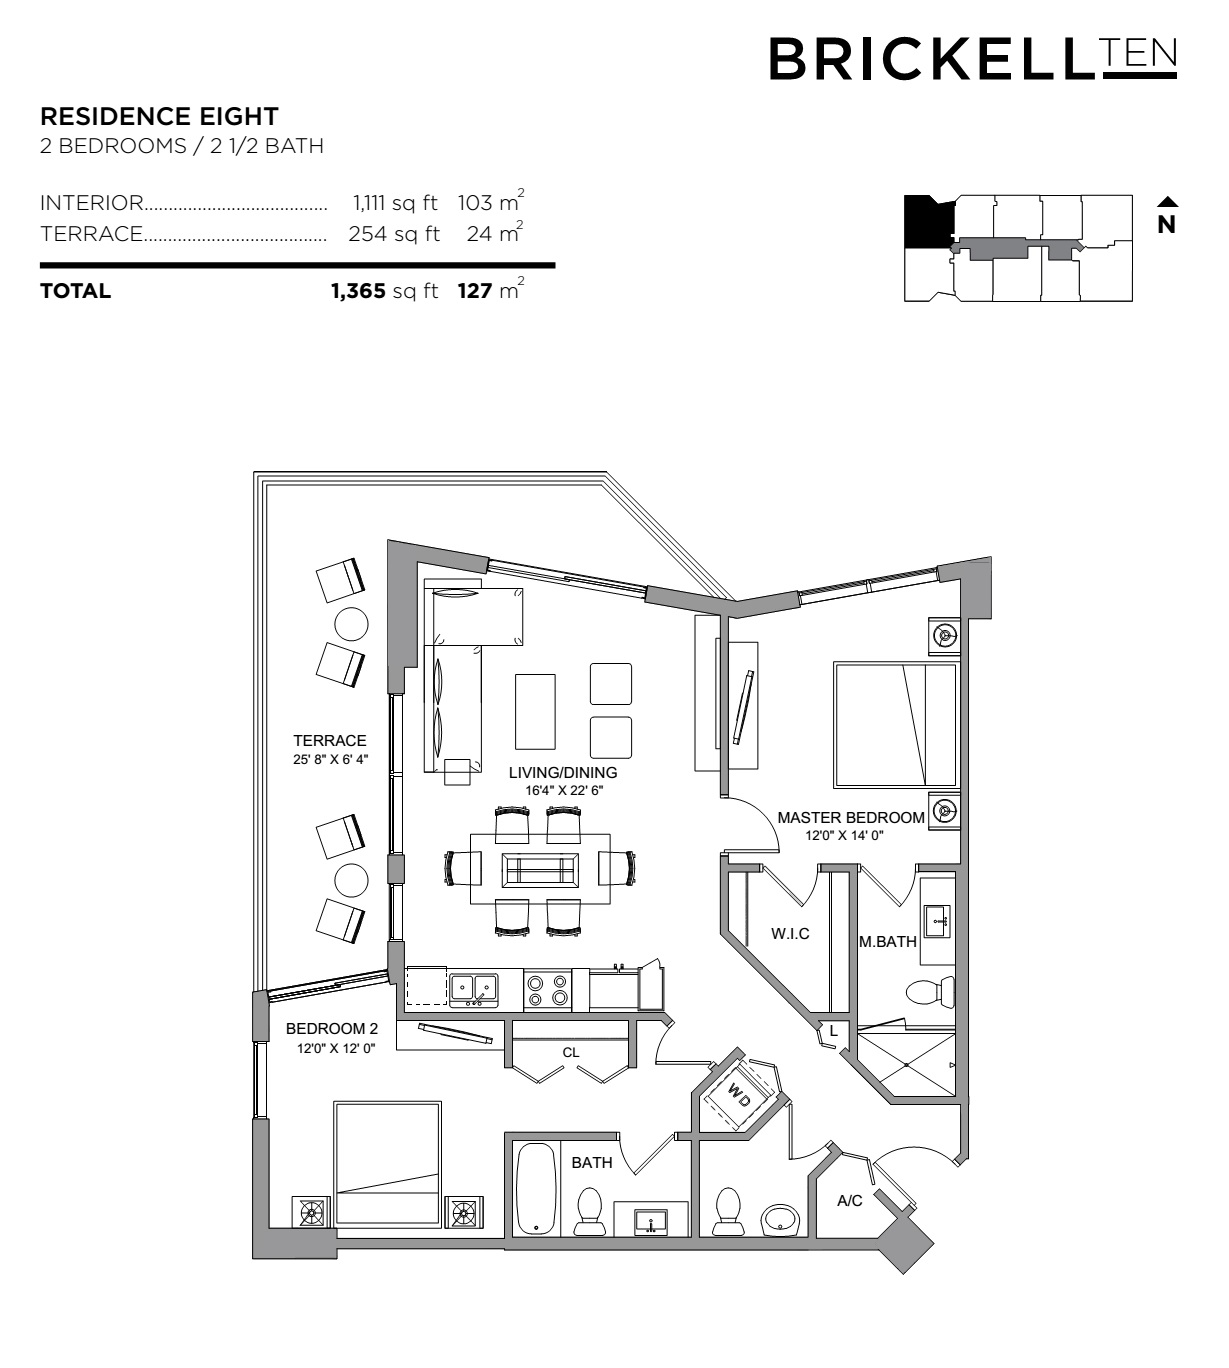 Brickell Ten Residence 08